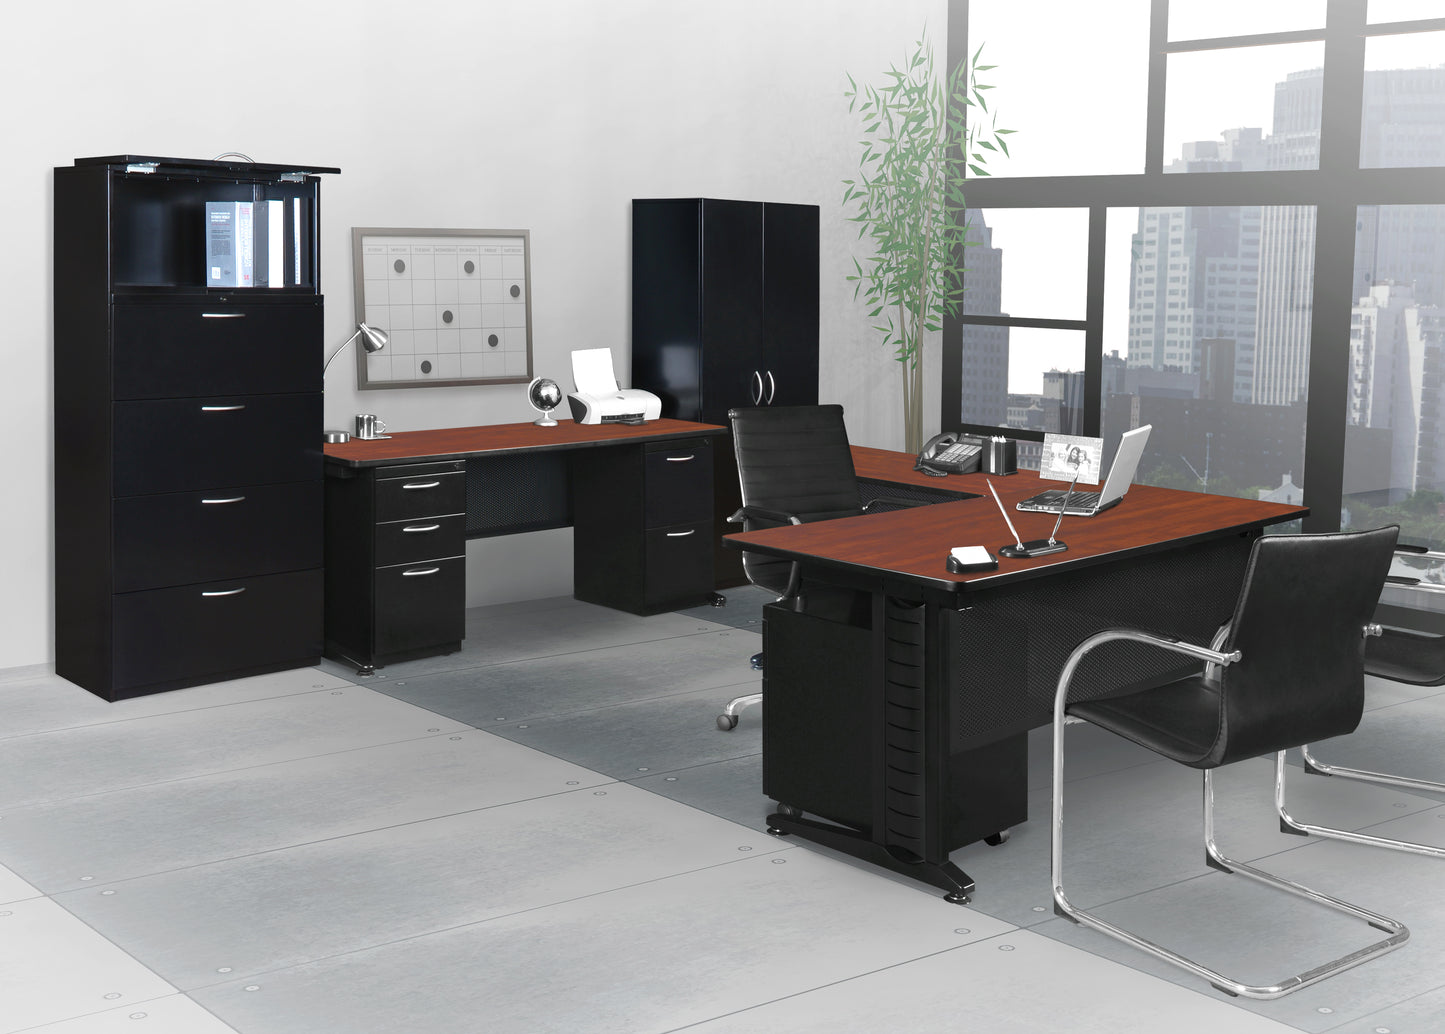 Regency Fusion 66" x 24" Teachers Desk with Double Pedestal Drawer Unit